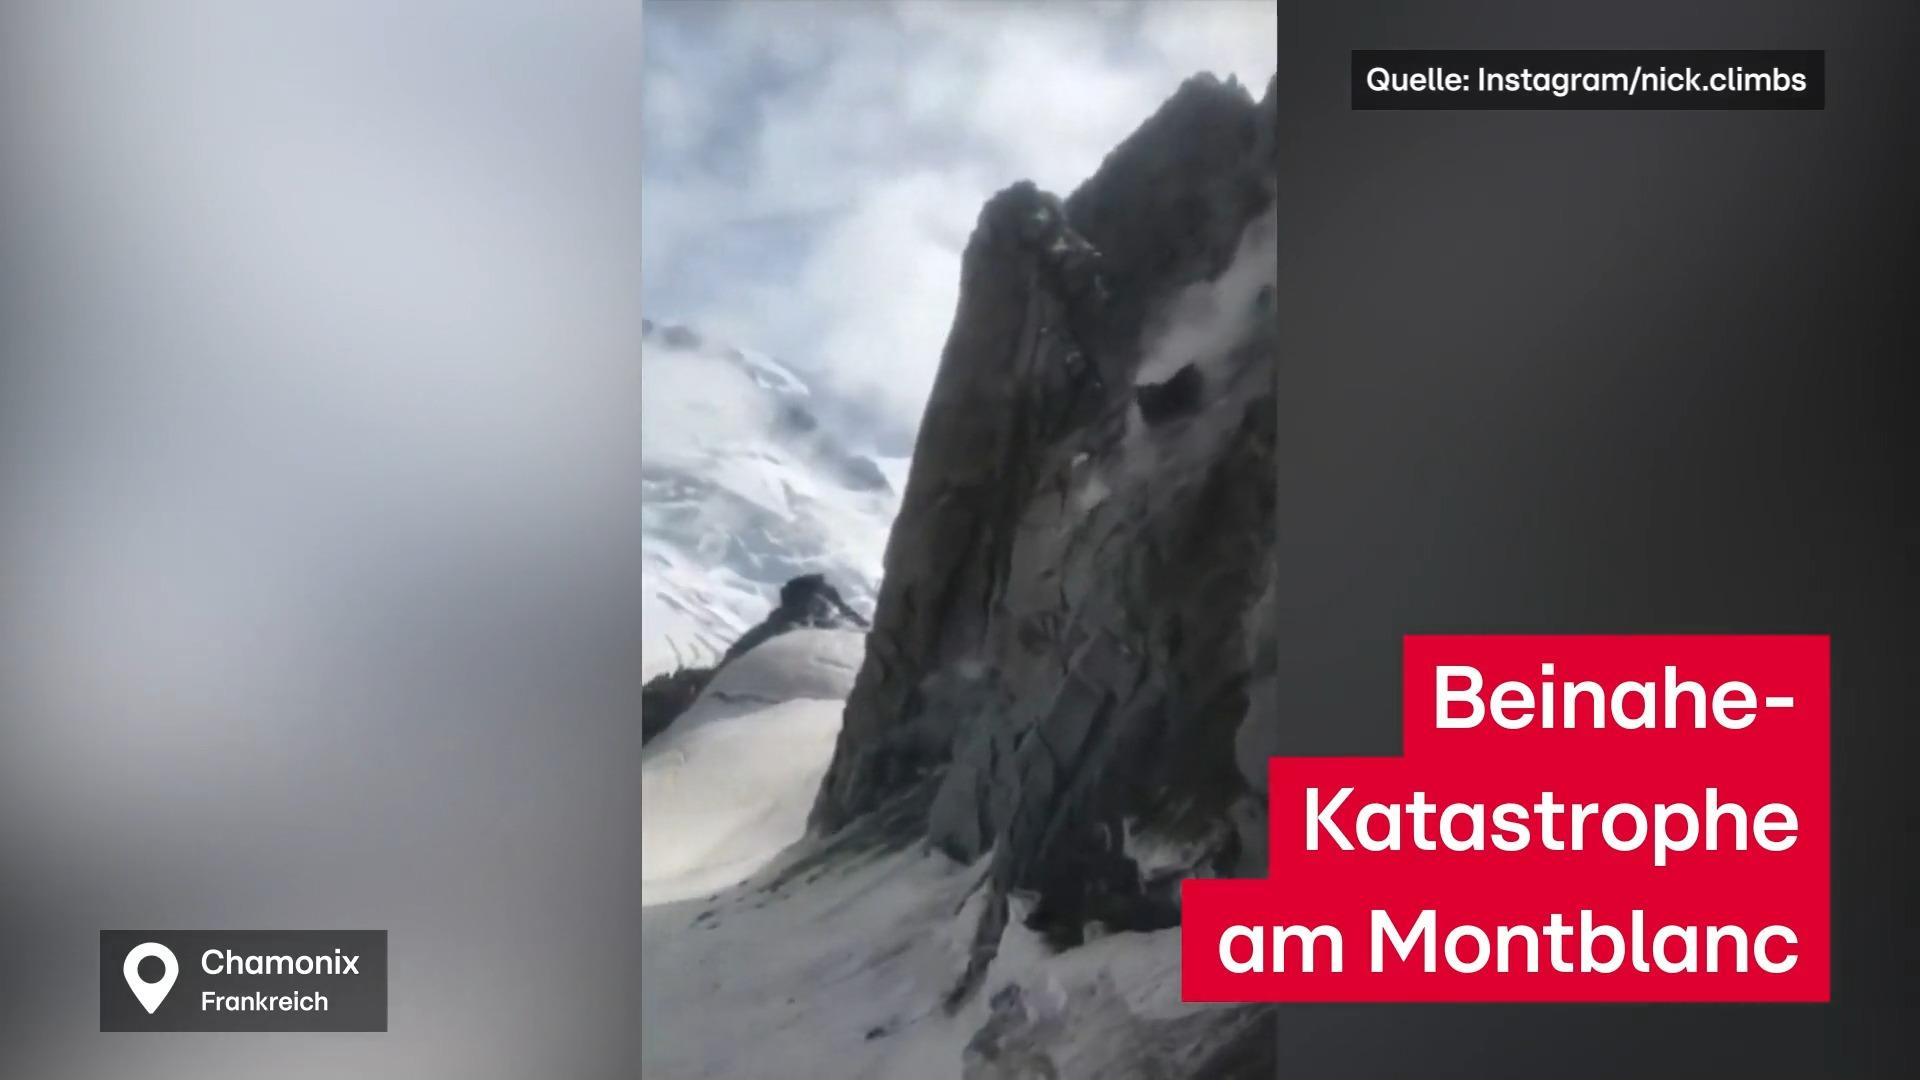 Beinahe-Katastrophe in den Alp Felssturz am Montblanc